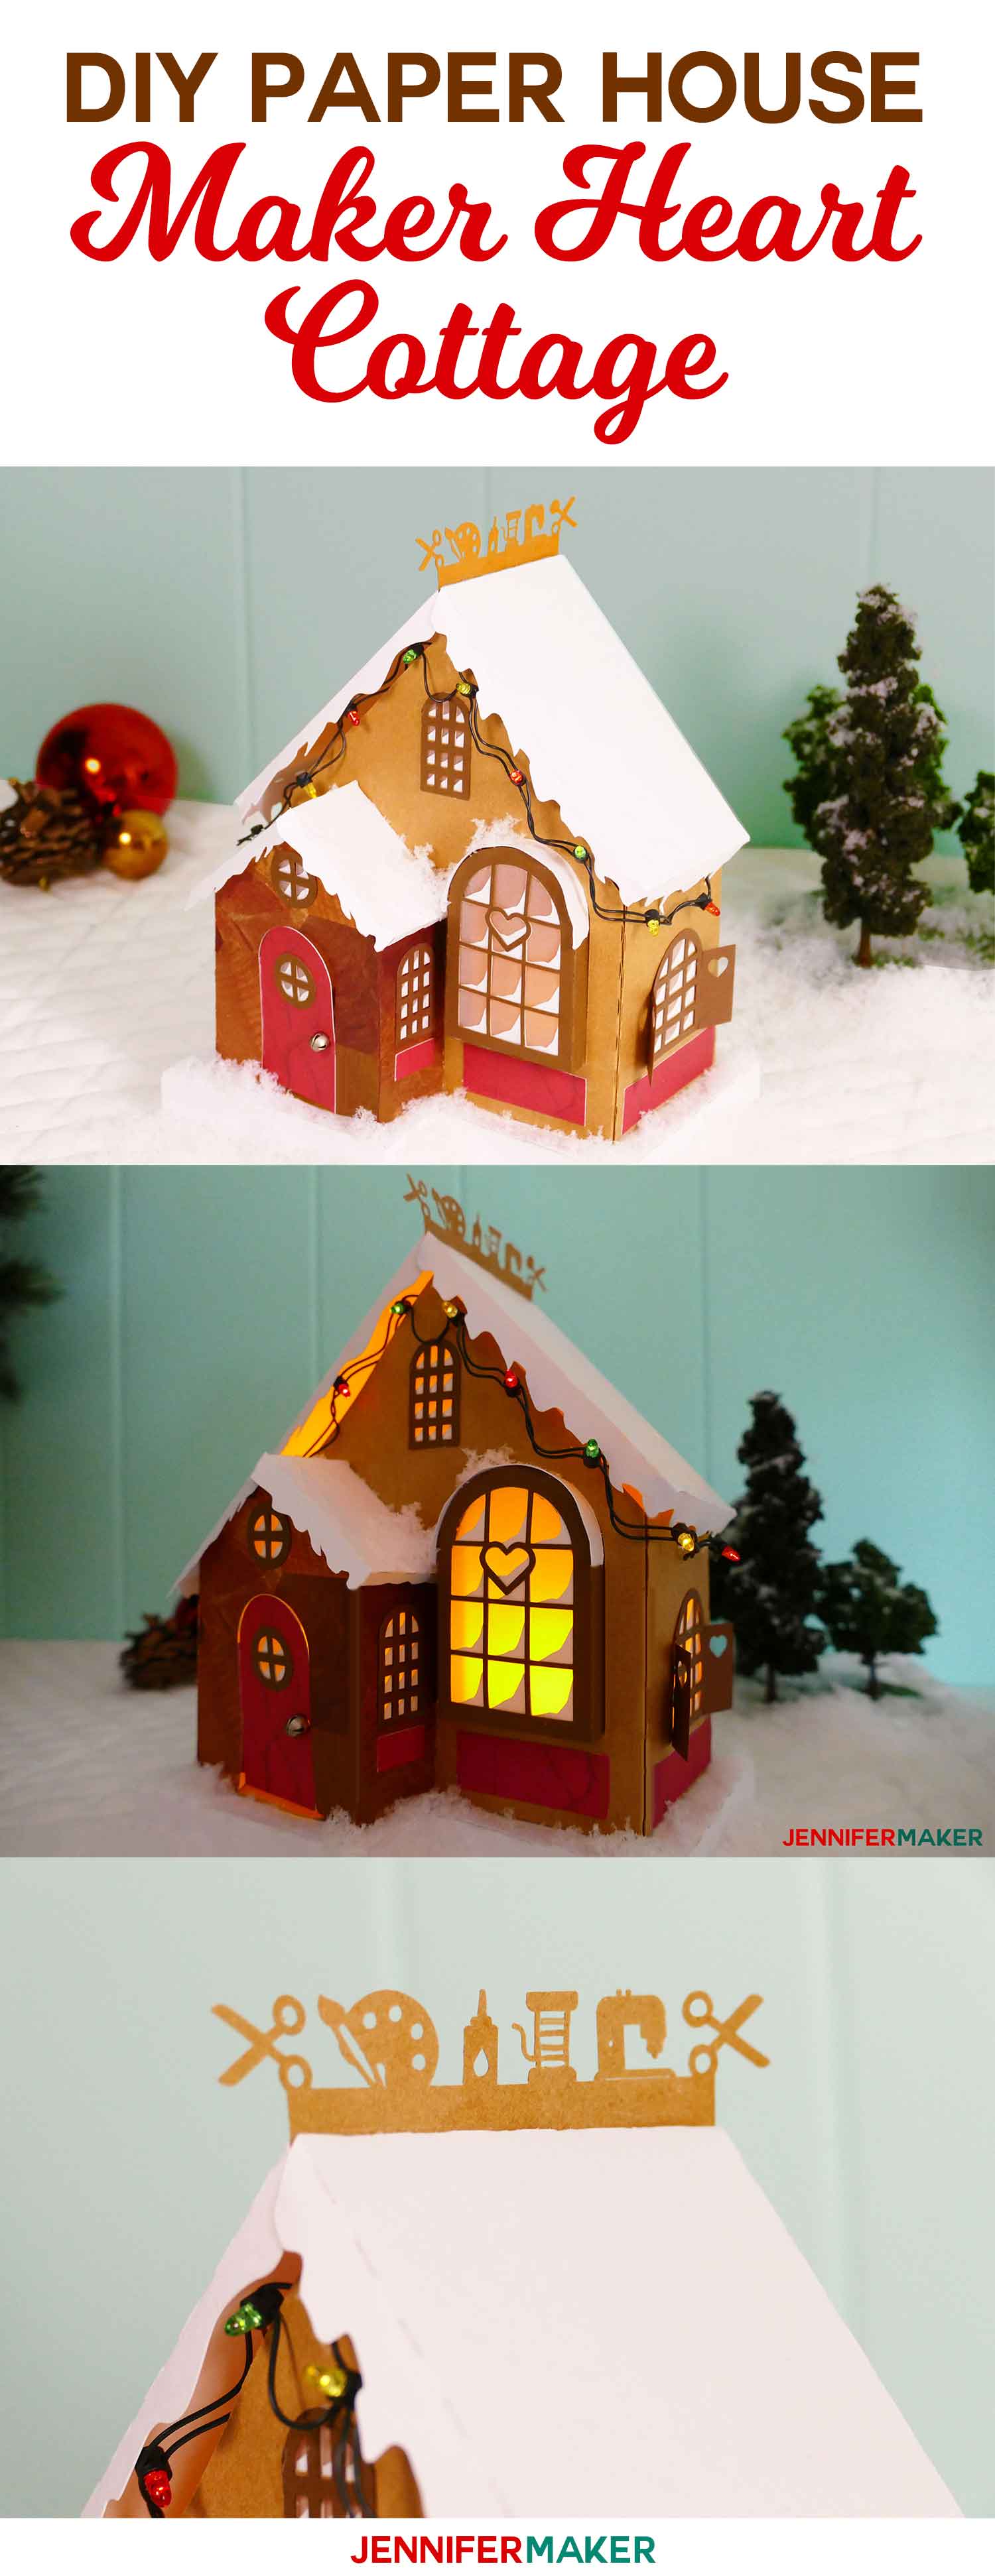 Download DIY Paper Village: Craft Cottage - Jennifer Maker